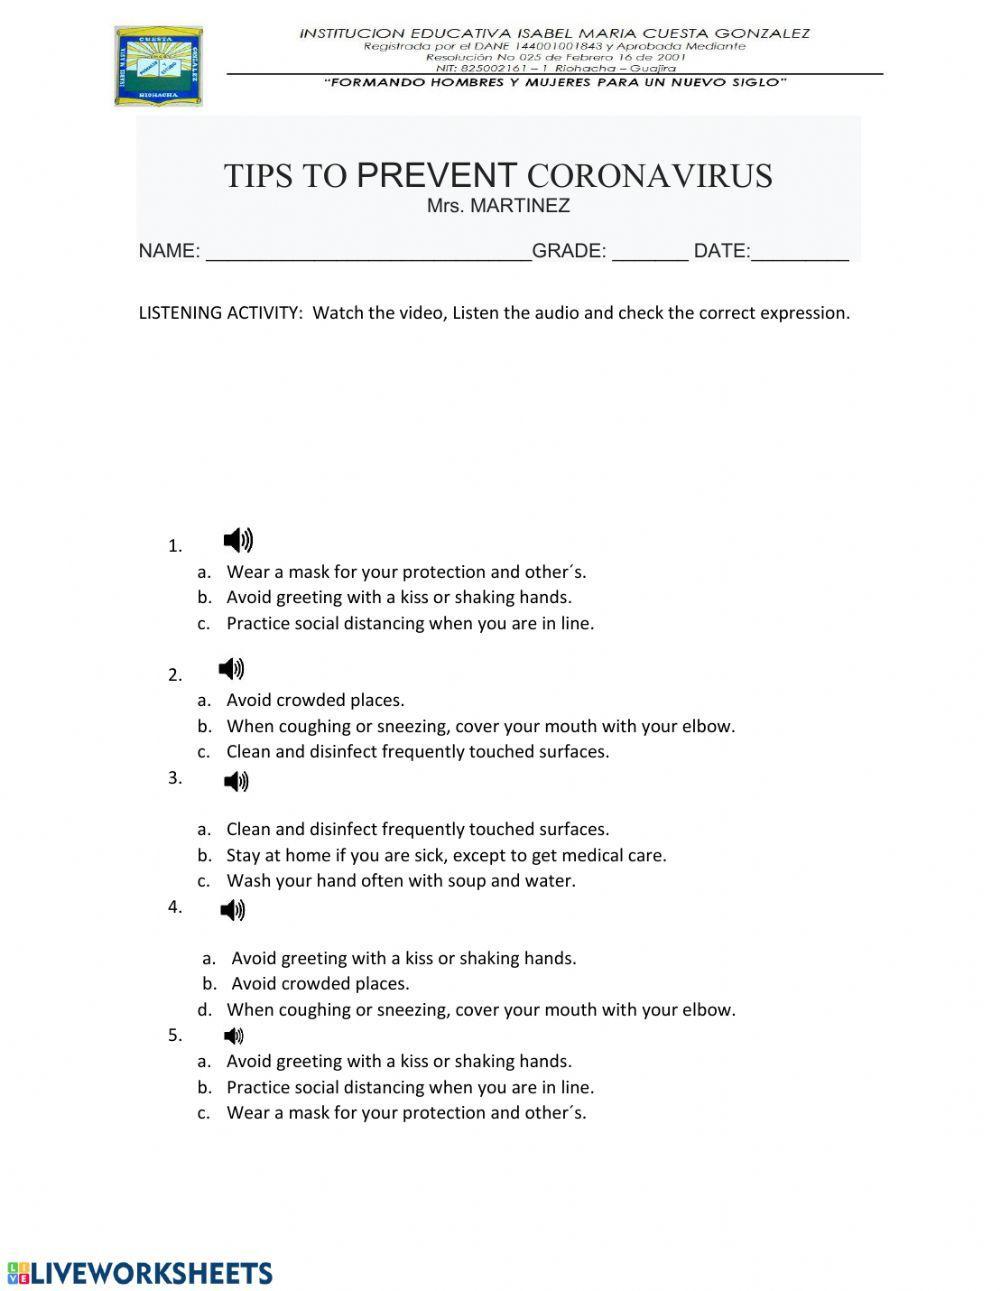 Listening: Tips to prevent Coronavirus